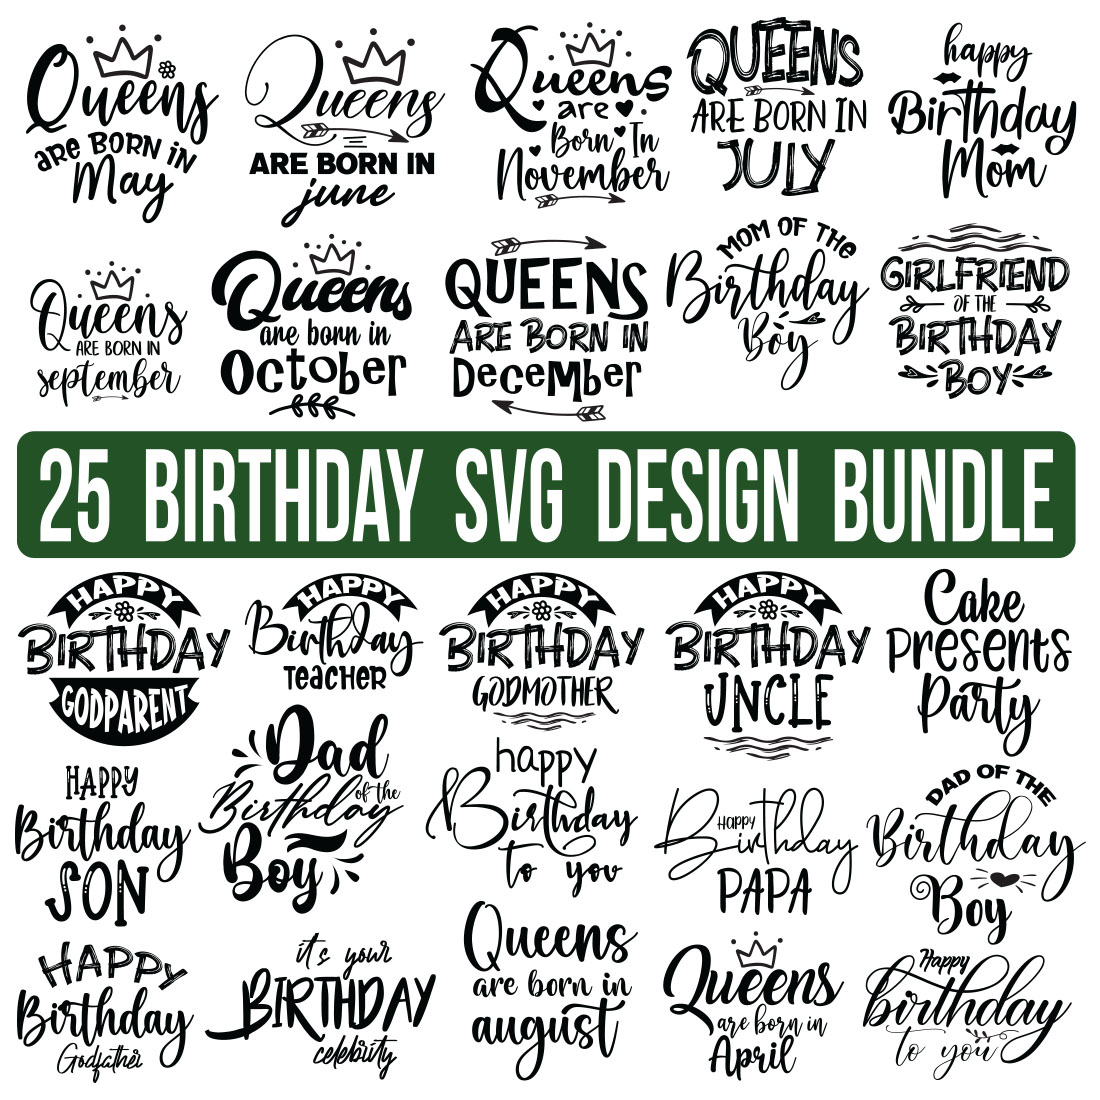 Birthday SVG Bundle, Birthday SVG, Birthday Girl svg, Birthday Shirt SVG, Gift for Birthday svg, Wishes for Birthday,Birthday Funny Quotes, Happy Birthday Svg, Birthday Bundle, cover image.